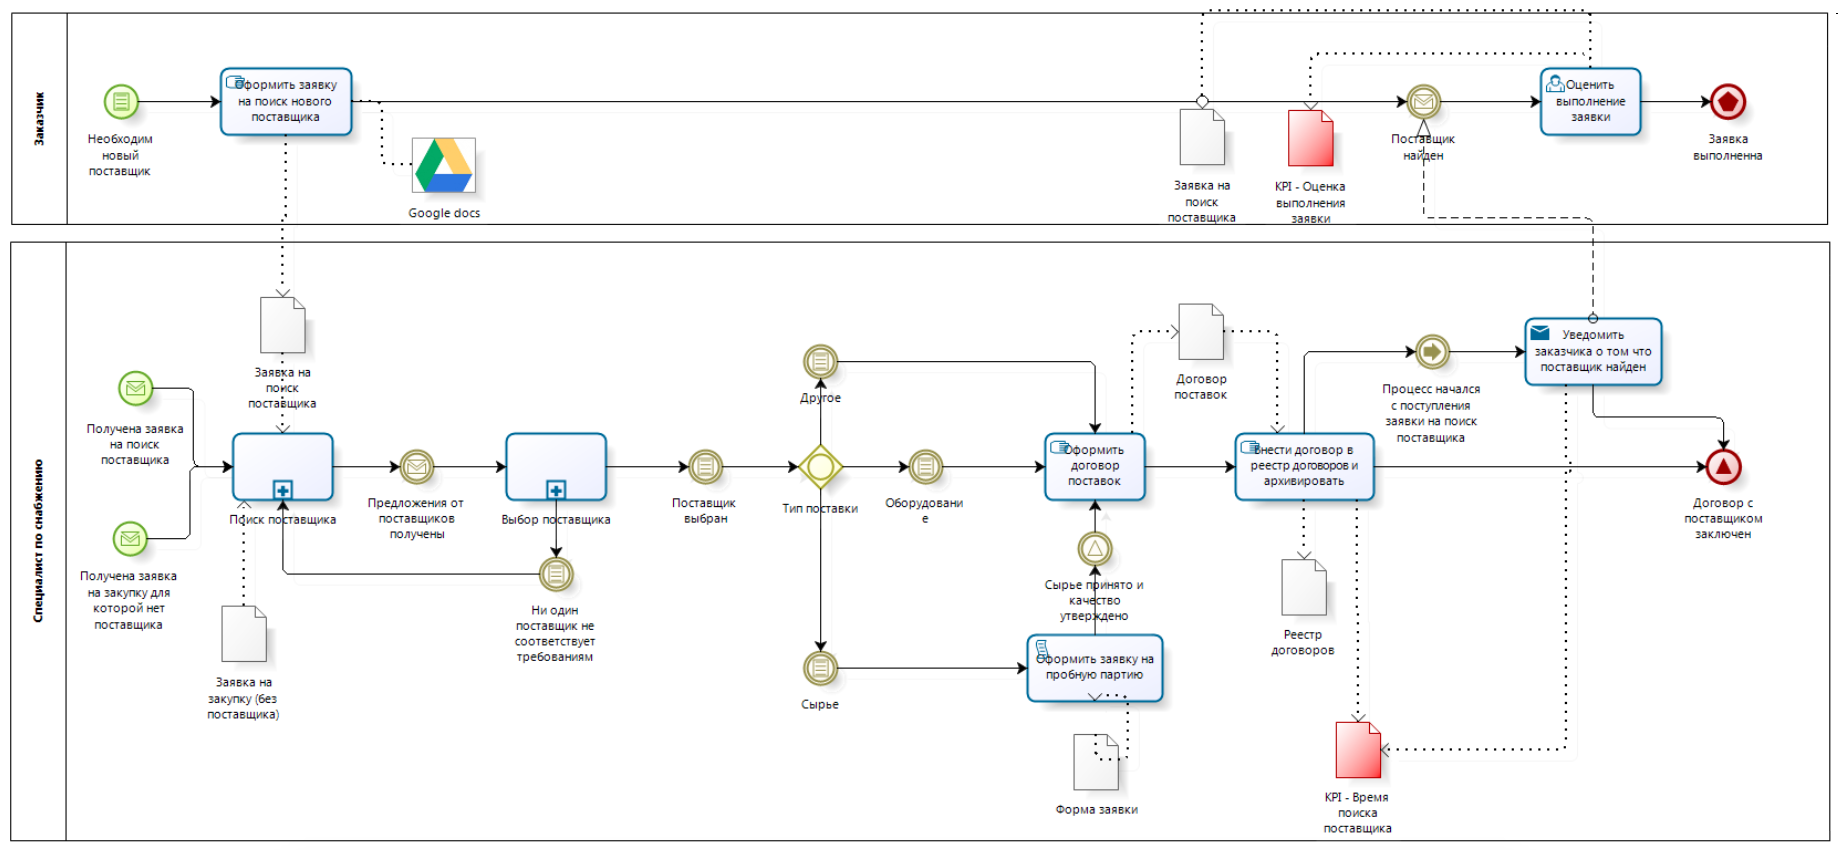 Модель процесса в нотации BPMN